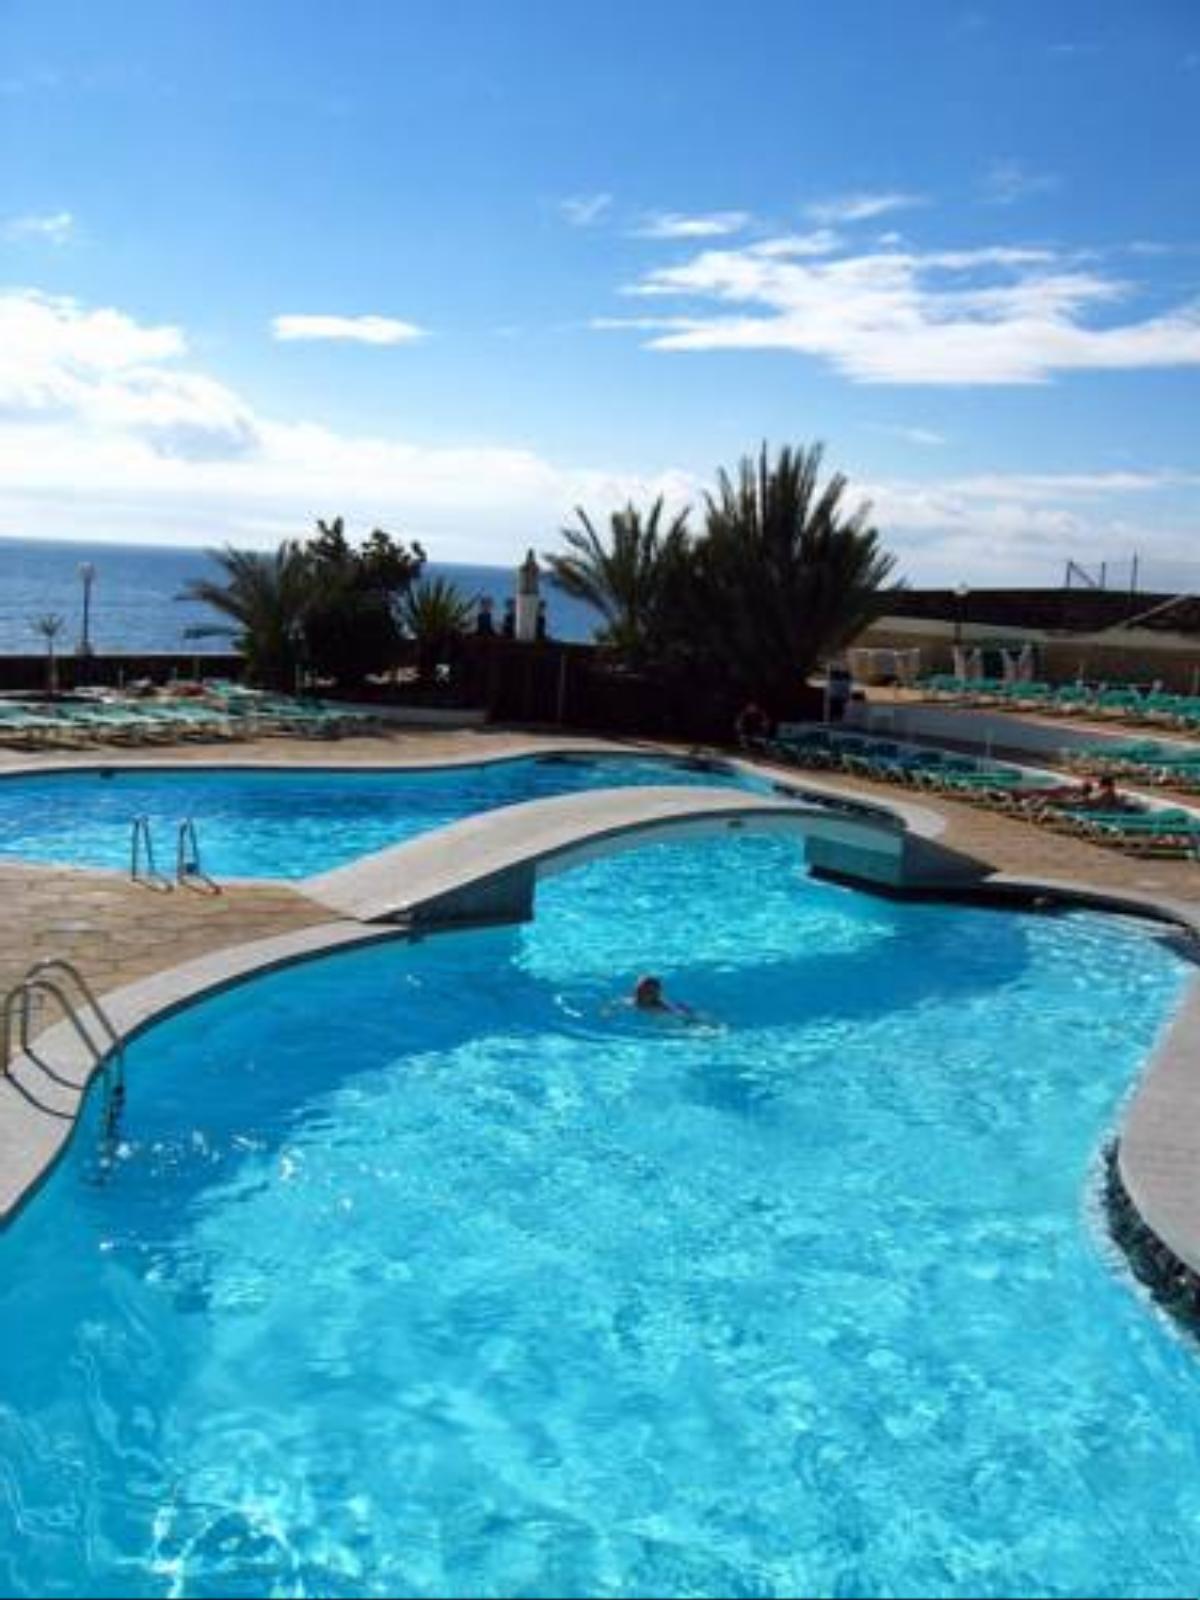 Westhaven Bay Hotel Costa Del Silencio Spain